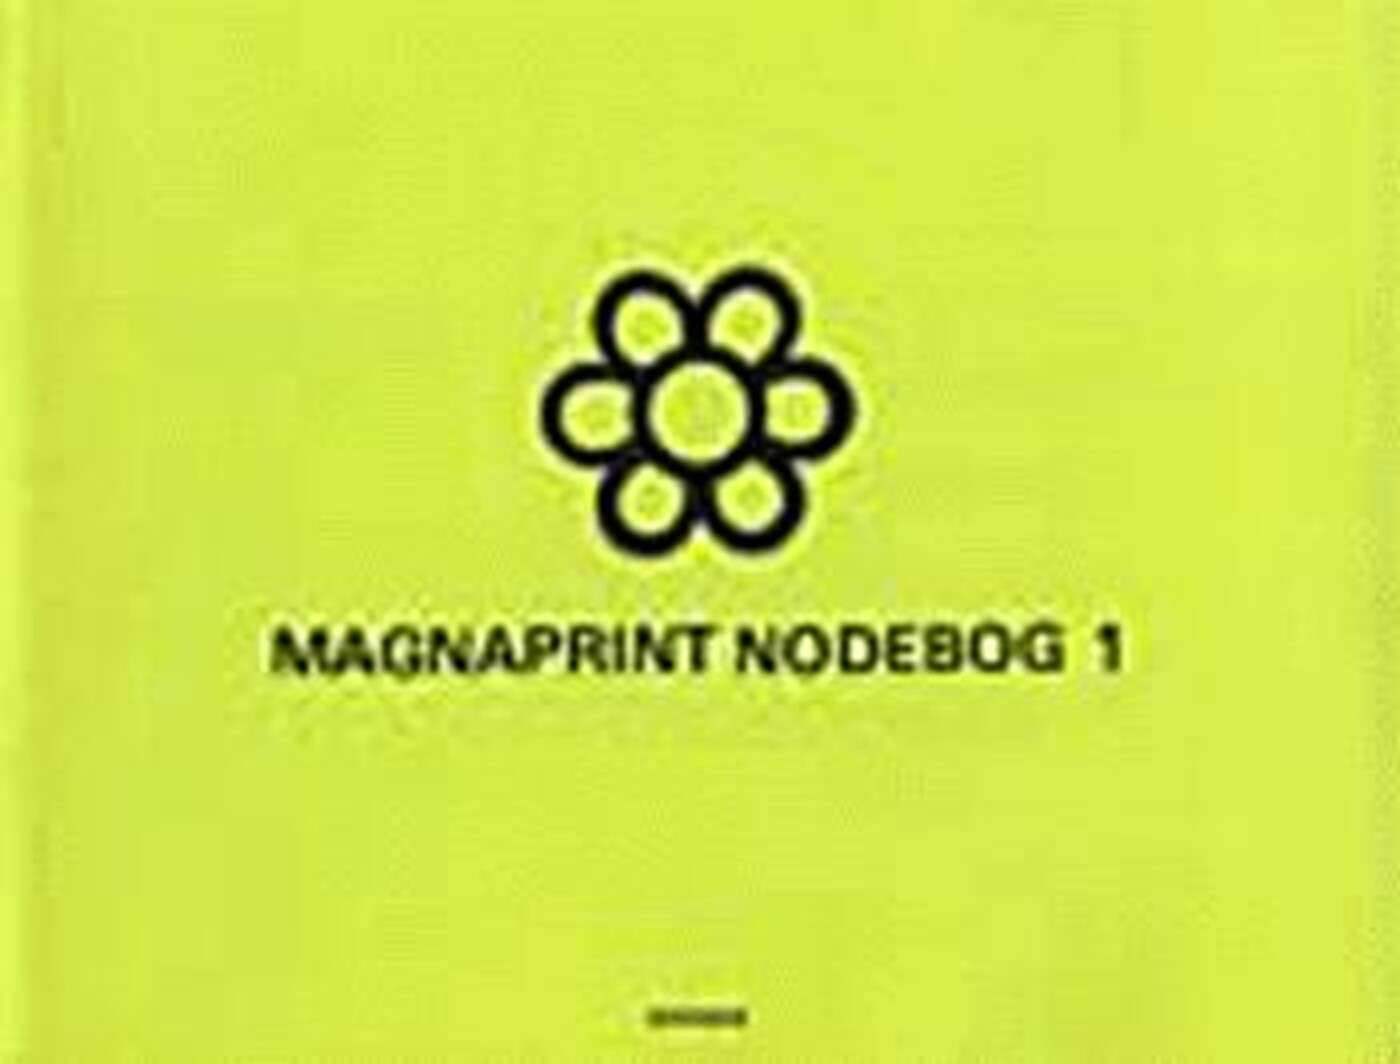 Magnaprint Nodebog 1 (grøn) - Diverse - Bog